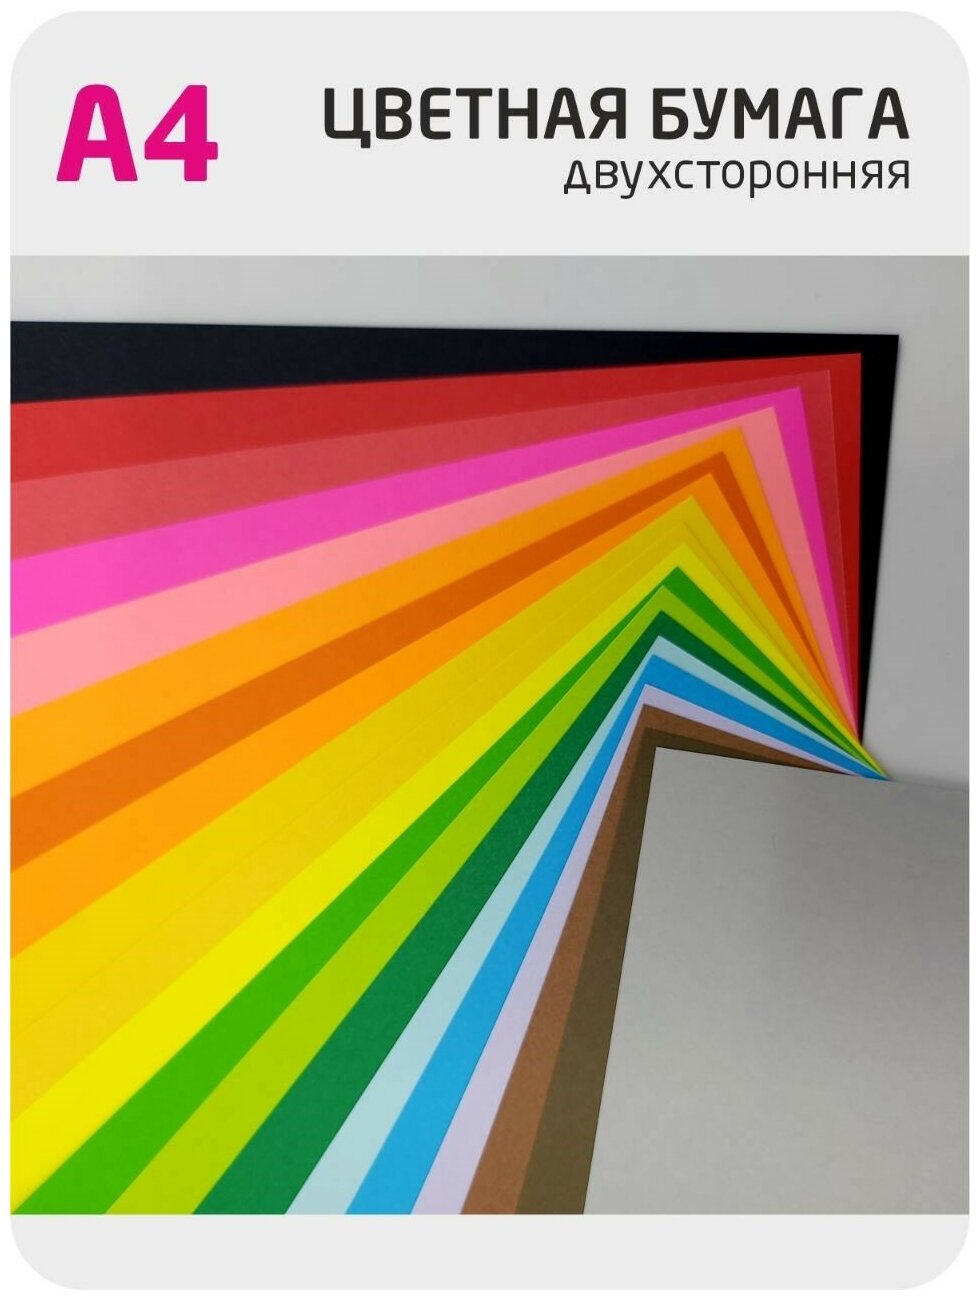 Цветная бумага /Набор цветной бумаги А4 двухсторонняя тонированная в массе 20 цветов 40 листов